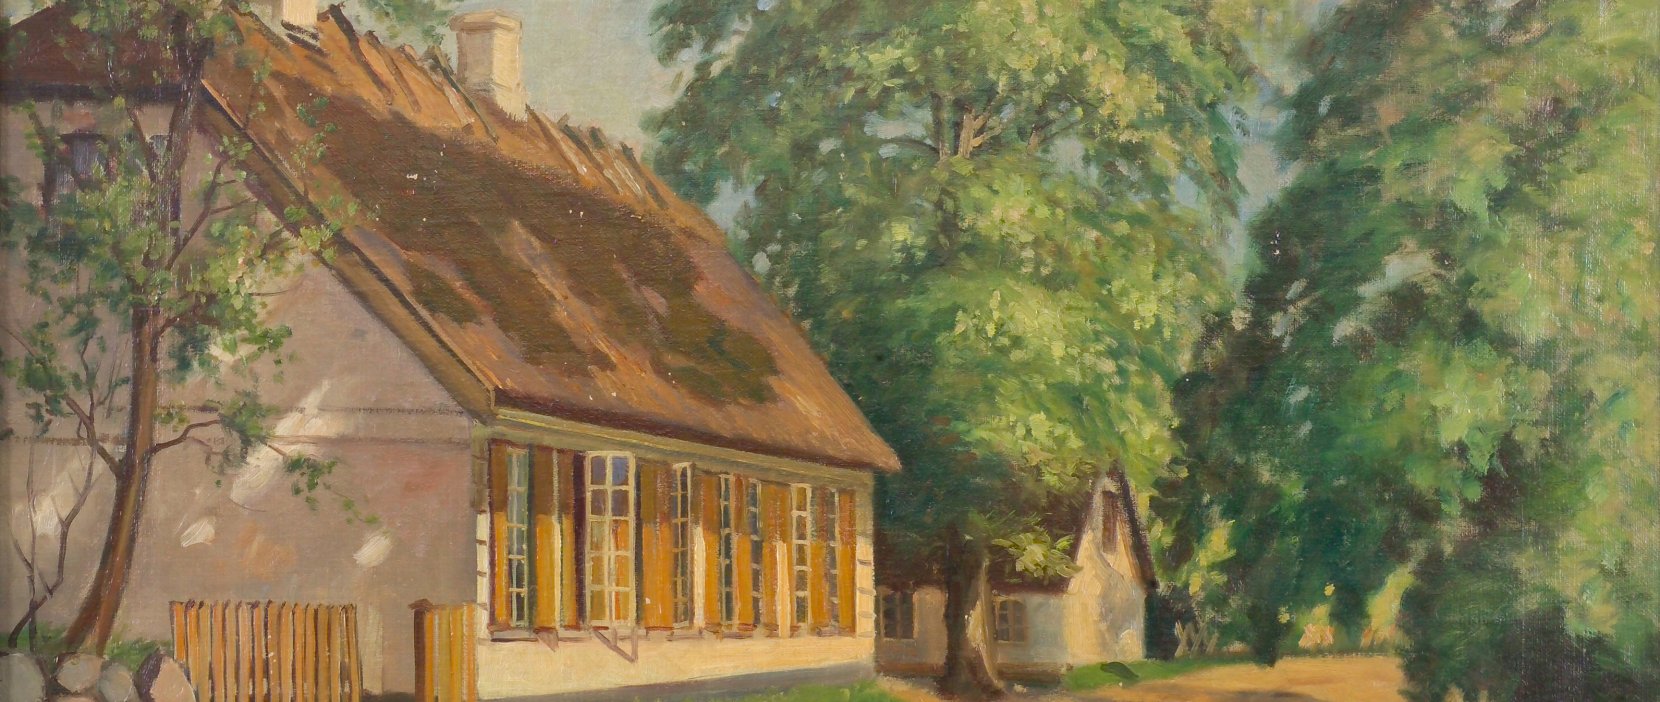 Høsterkøb Gamle Skole Maleri af Edmond Petersen